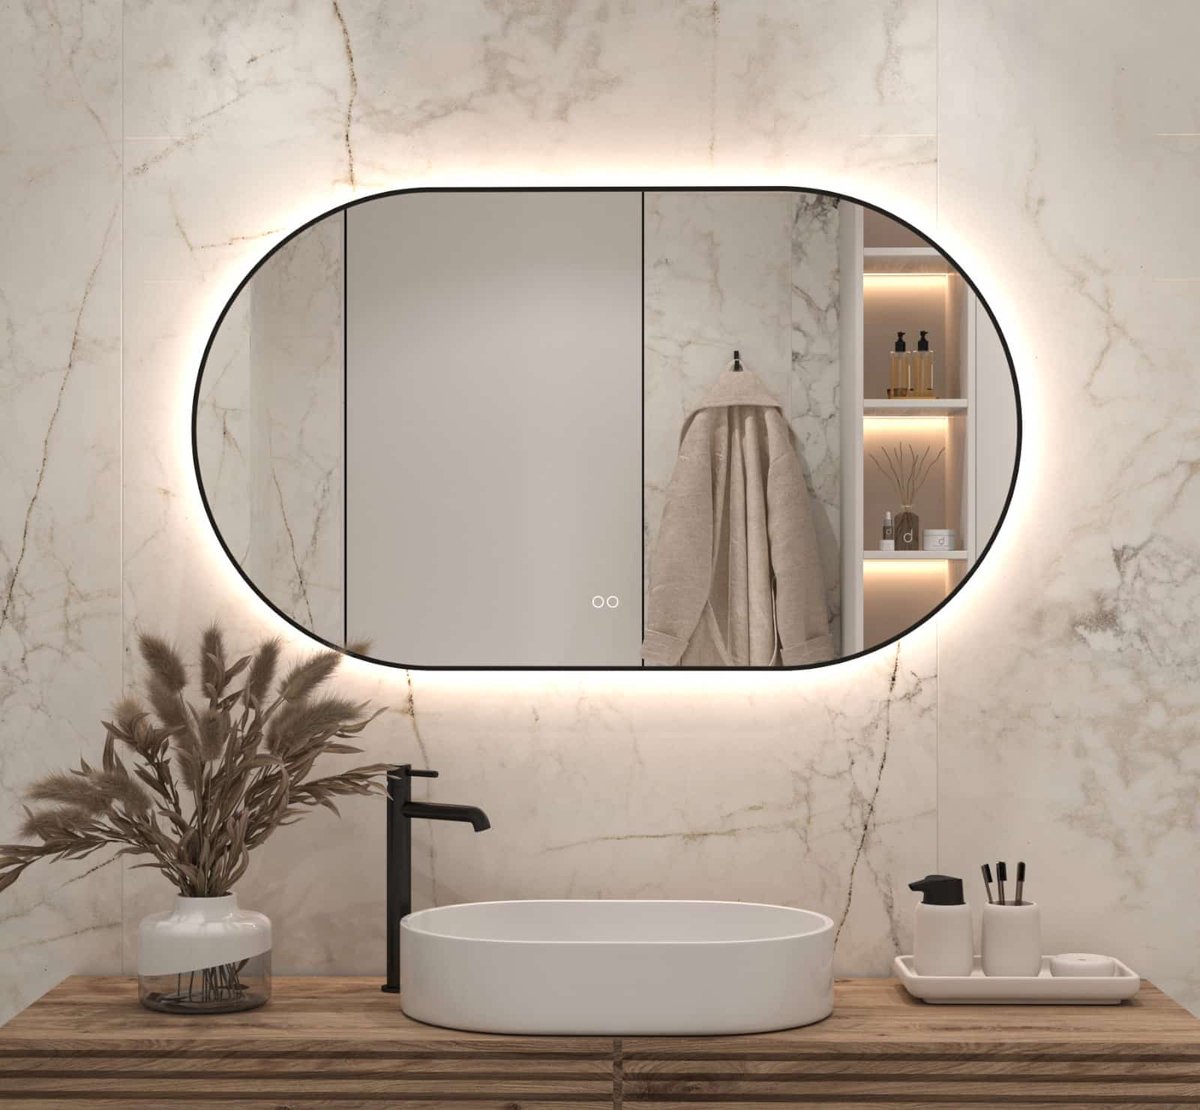 Ovale badkamerspiegel met indirecte verlichting, verwarming, touch sensor, kleurenwissel en mat zwart frame 120×70 cm